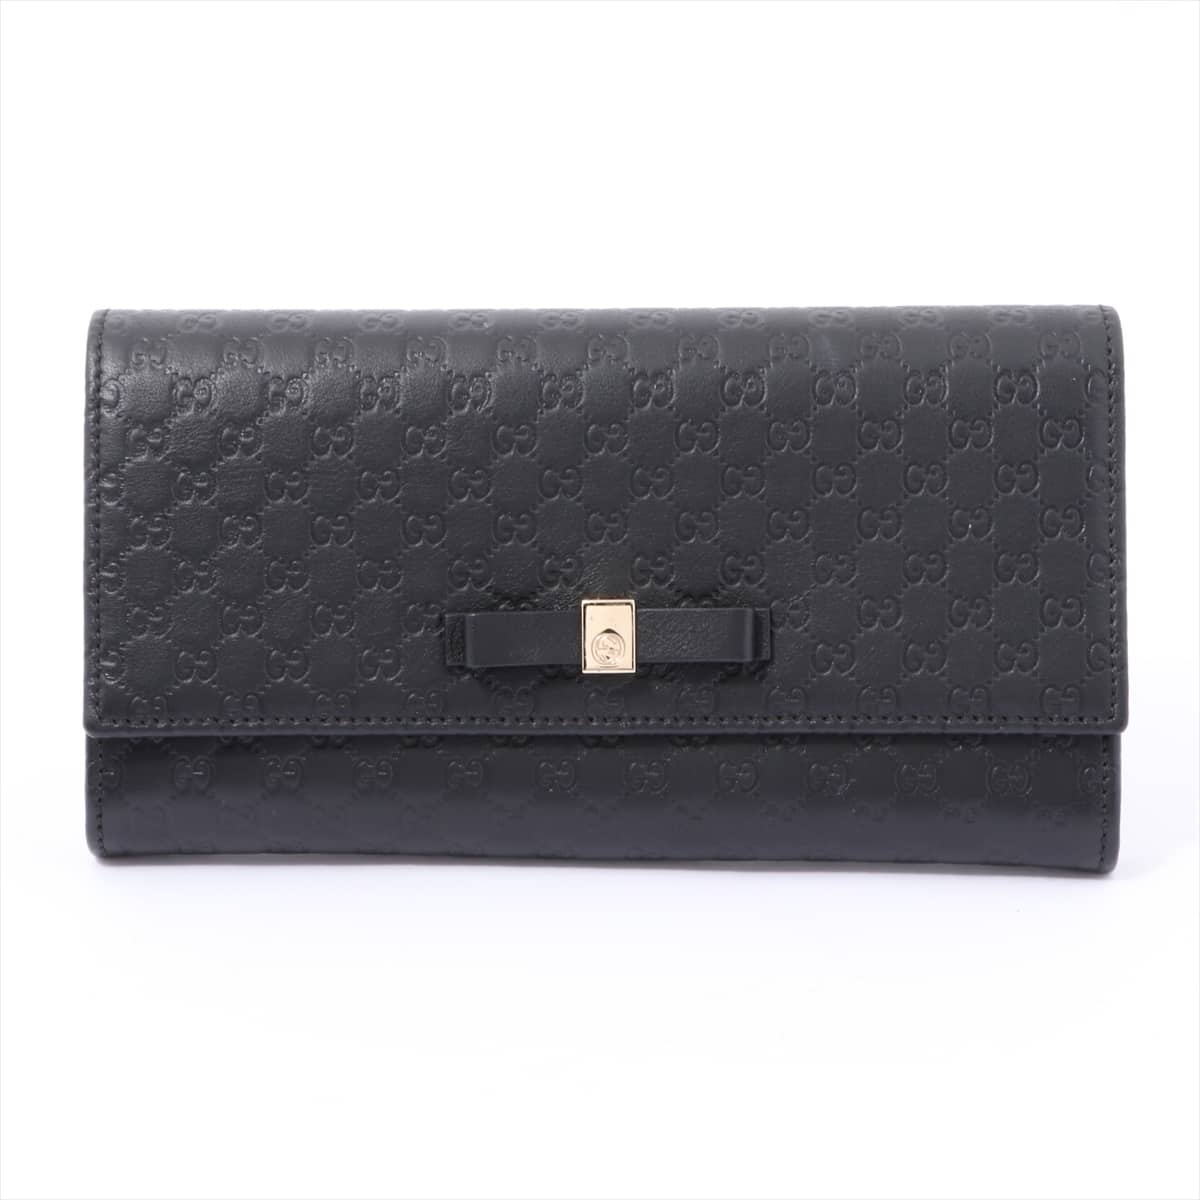 Gucci Micro Guccissima 388679 Leather Wallet Black